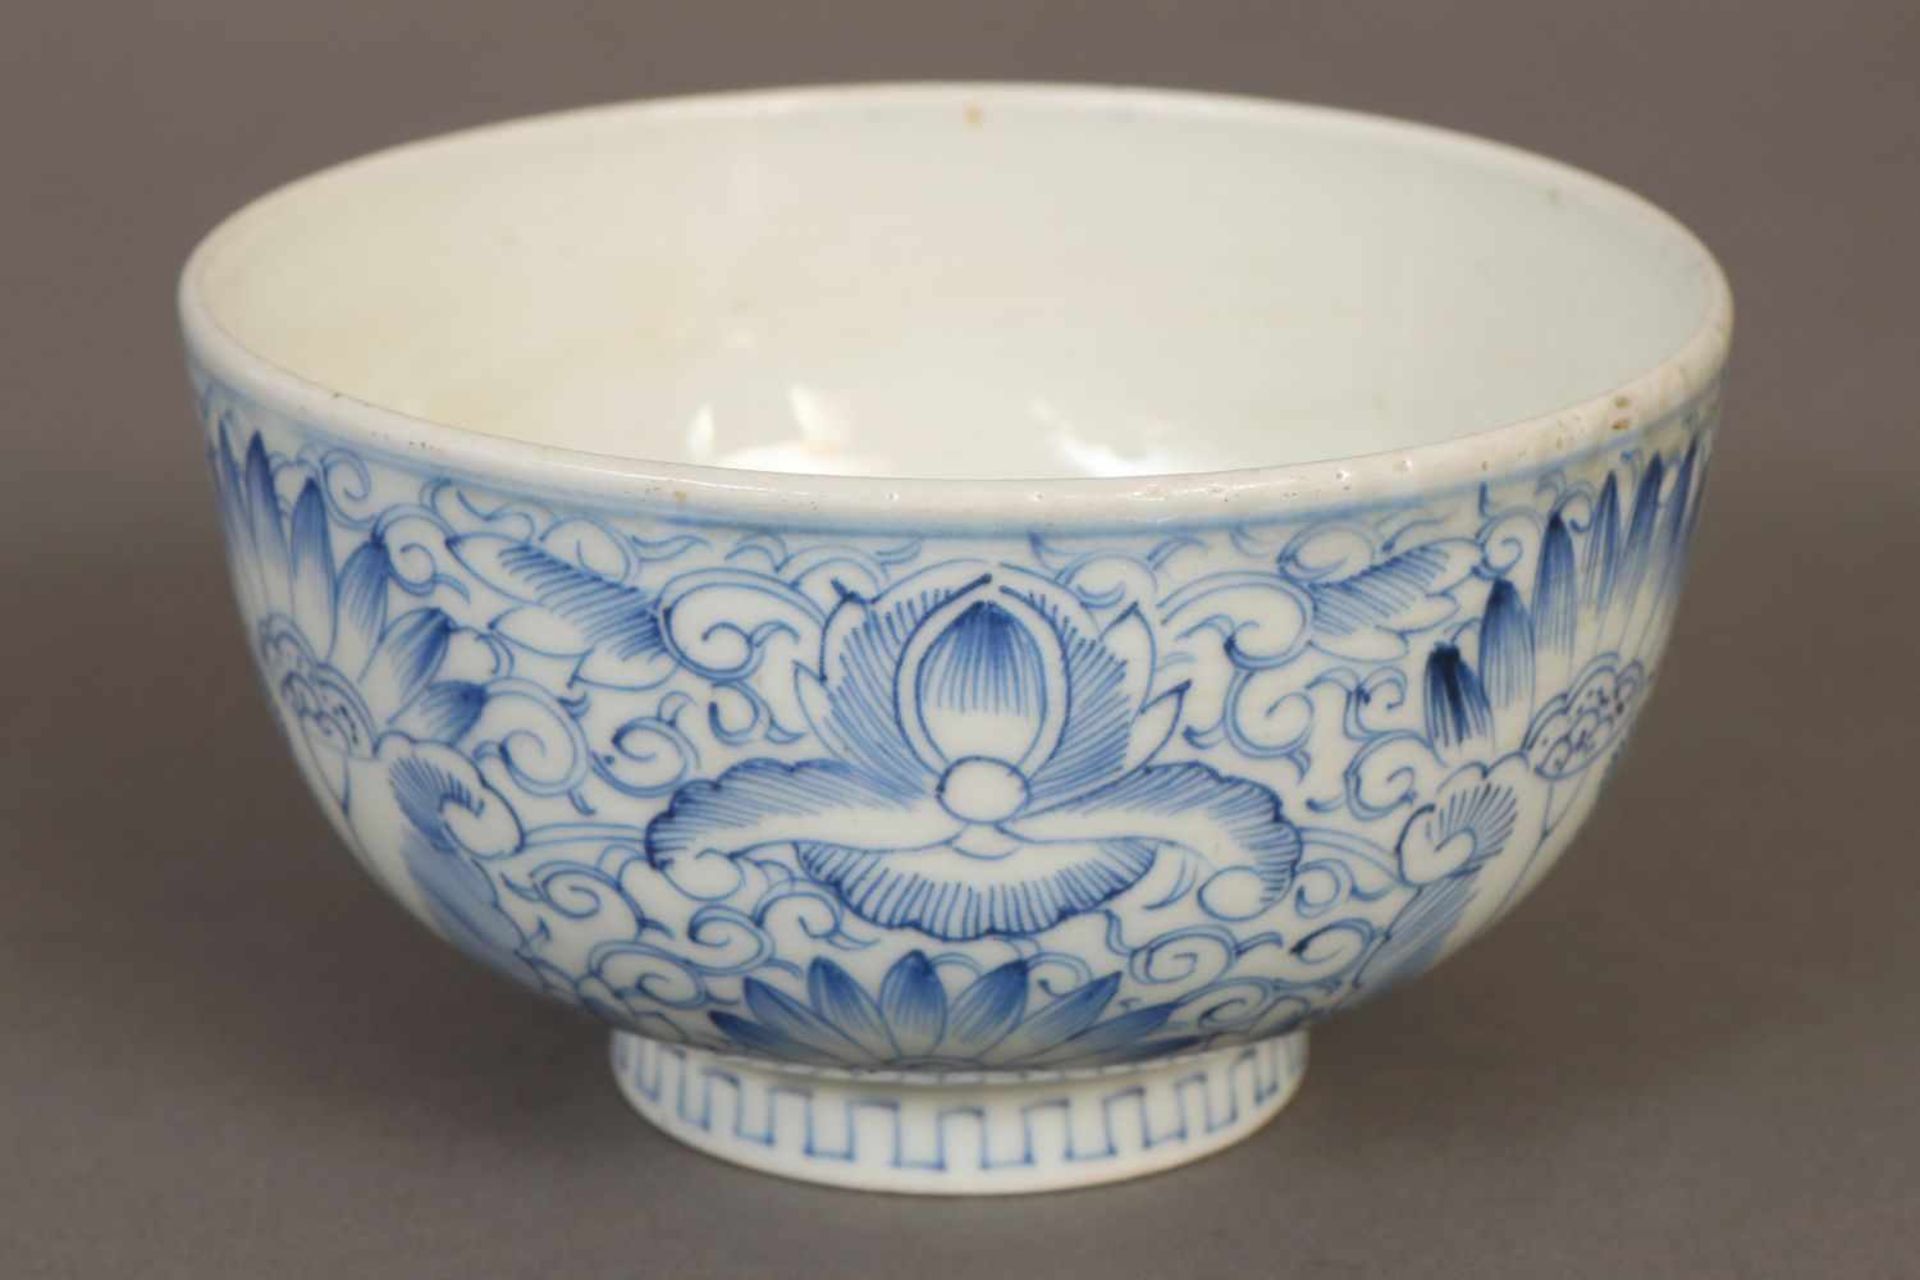 Chinesische Porzellanschalewohl um 1820, runde, glatte Form auf eingezogenem Rundfuß, umlaufend